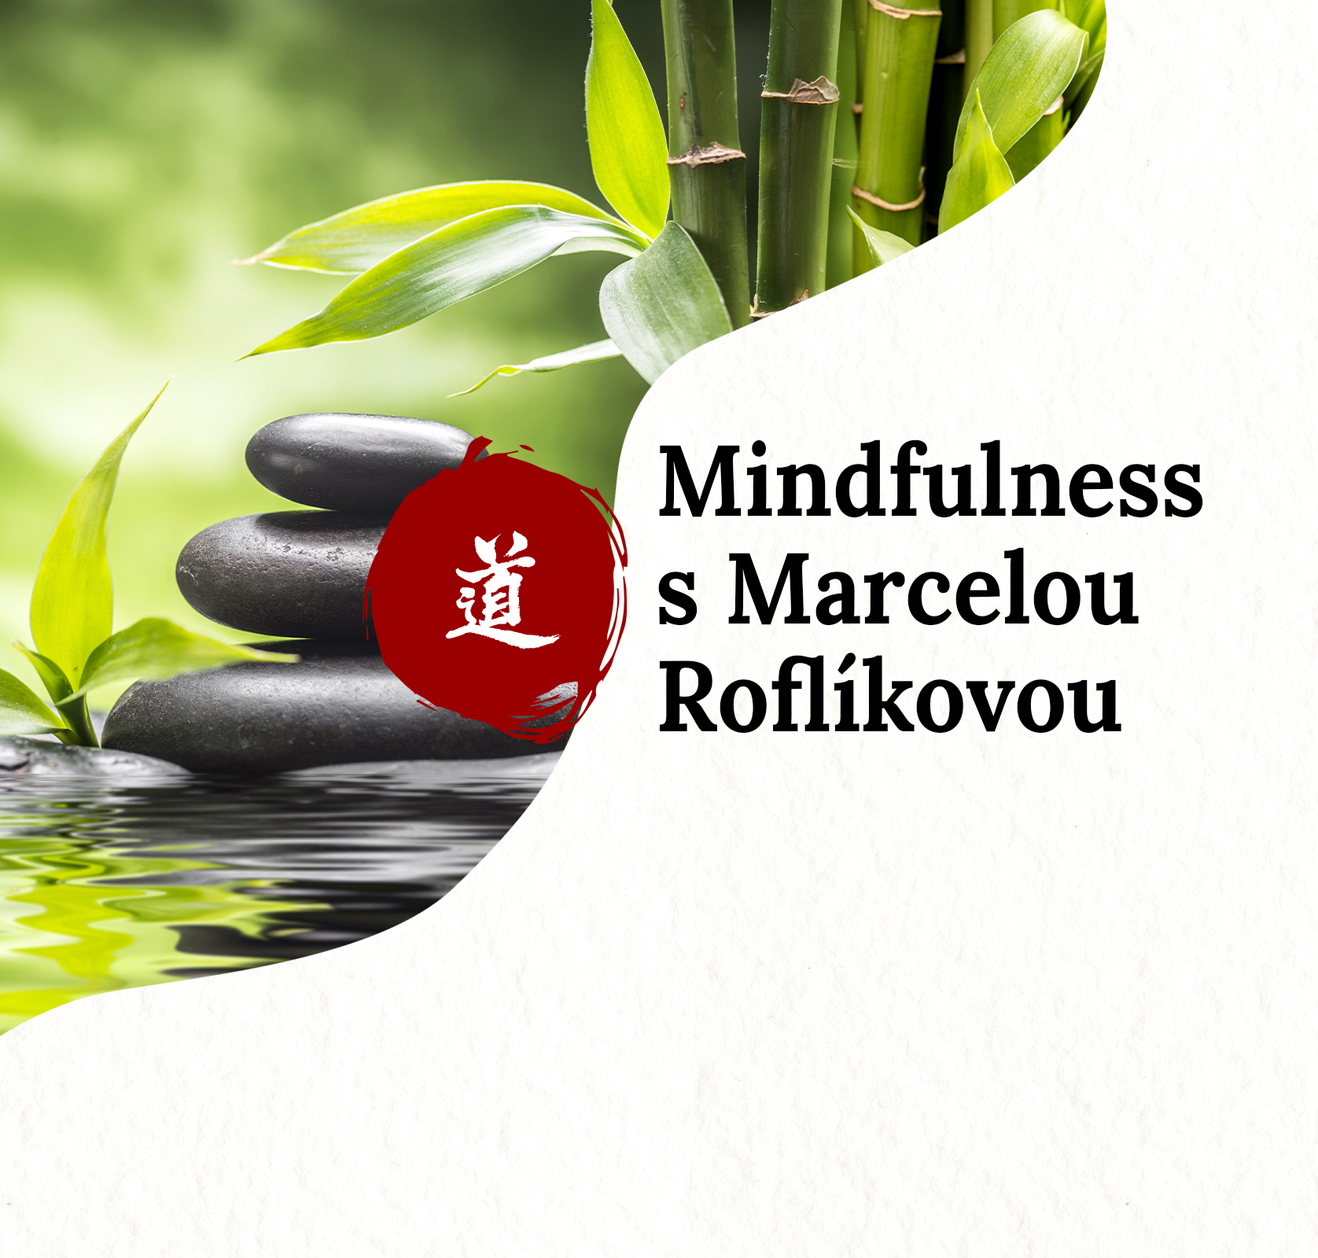 Mindfulness - laskavé zacházení se sebou